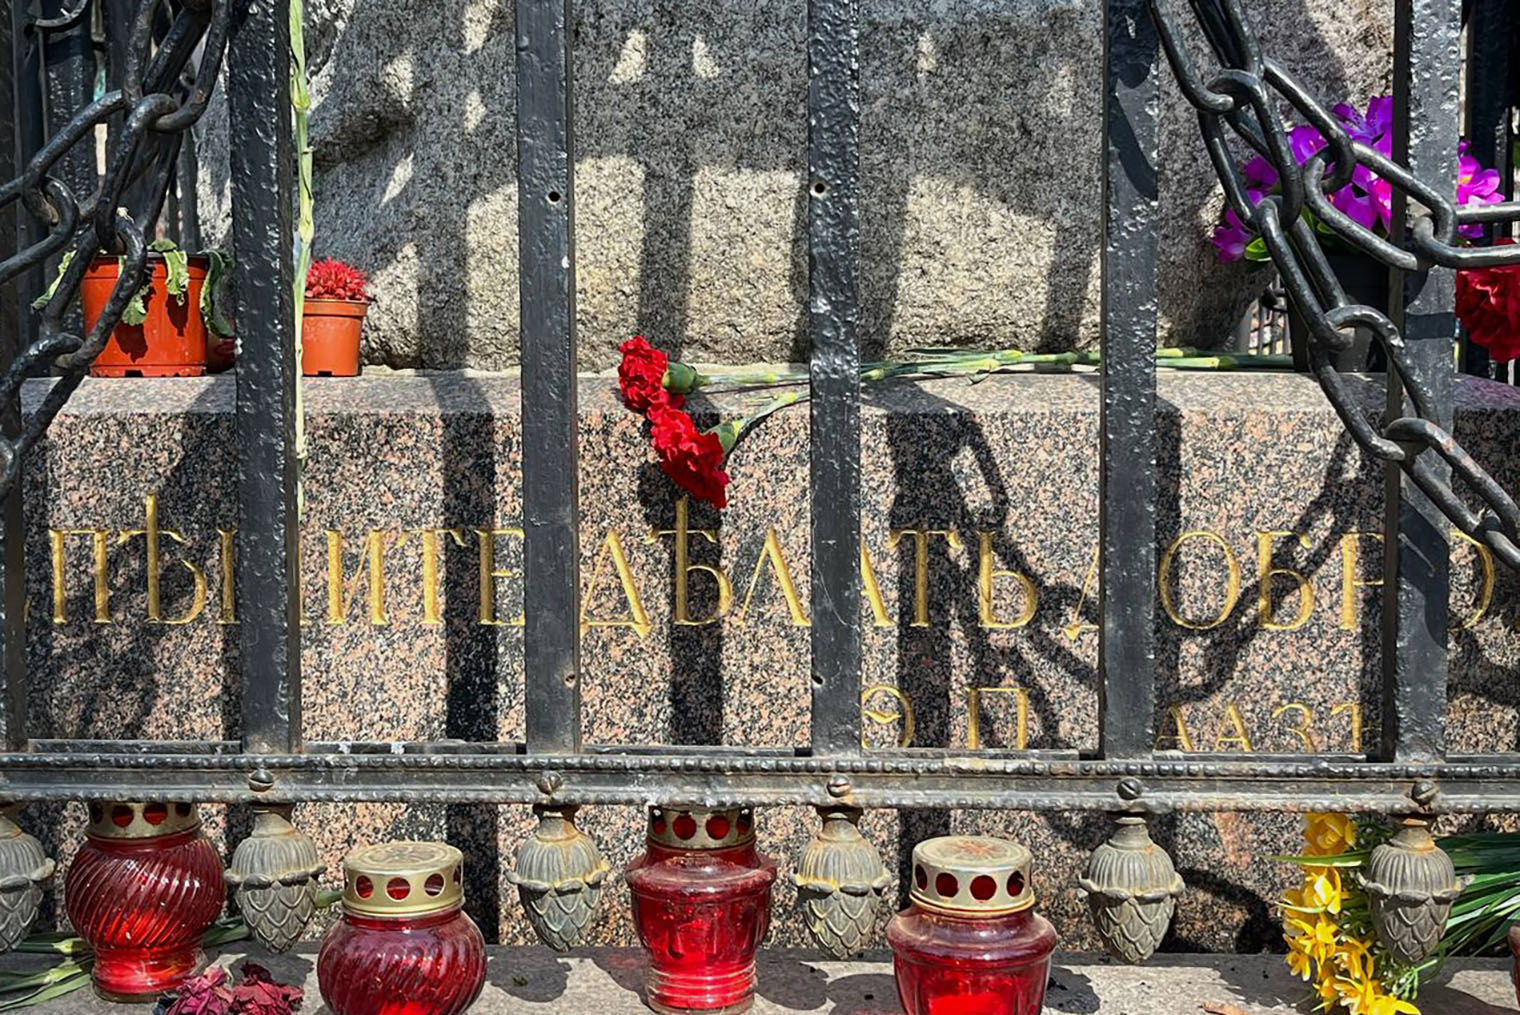 На надгробии доктора Гааза выбито «Спешите делать добро», а на железном ограждении висят кандалы